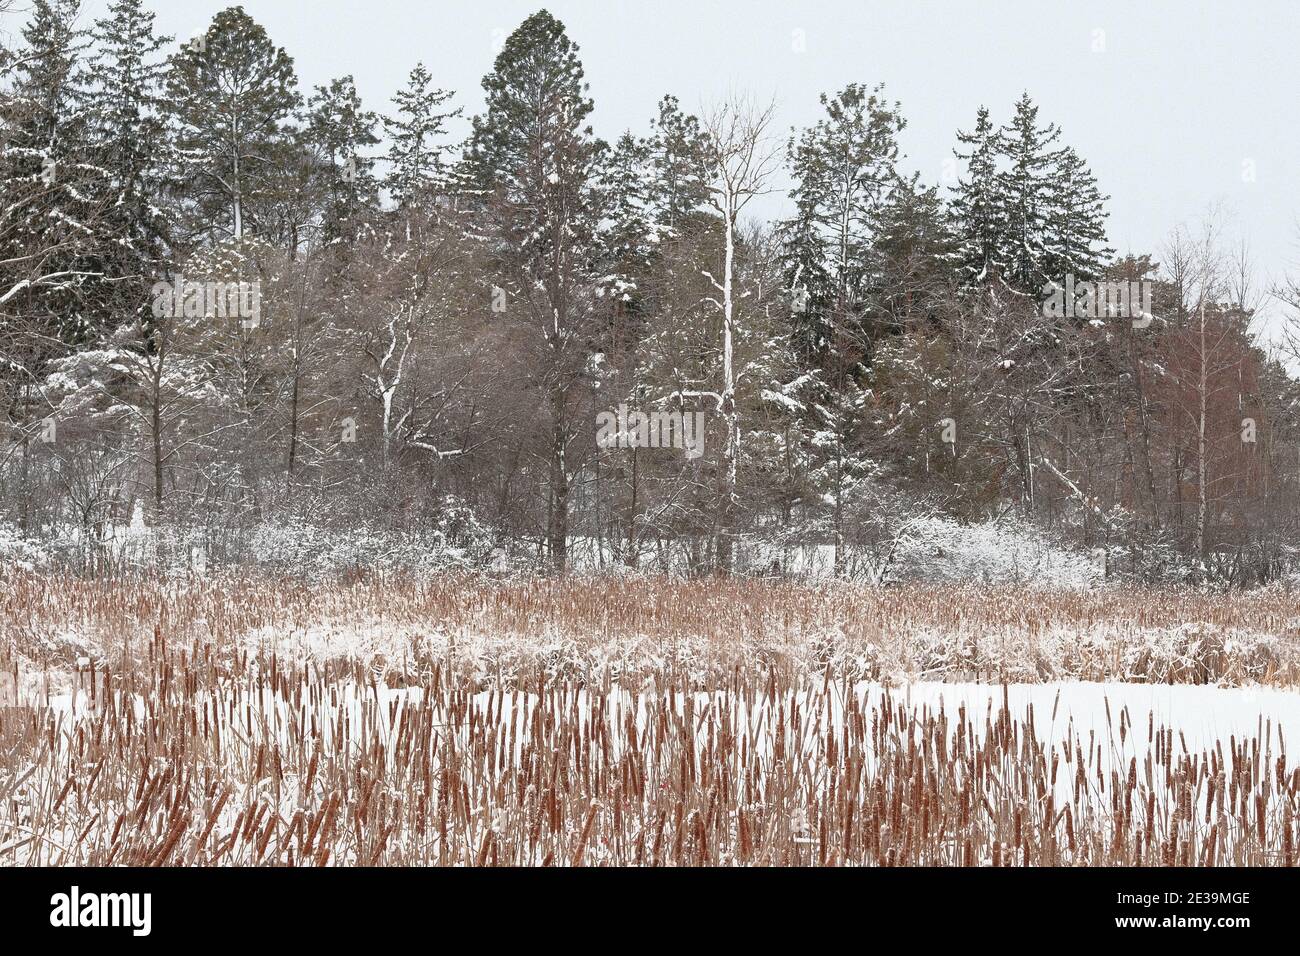 Wunderbare gedämpfte Farben einer winterschneebedeckten Baumgrenze hinter einigen getrockneten hohen Gräsern am Arboretum, Ottawa, Ontario, Kanada. Stockfoto